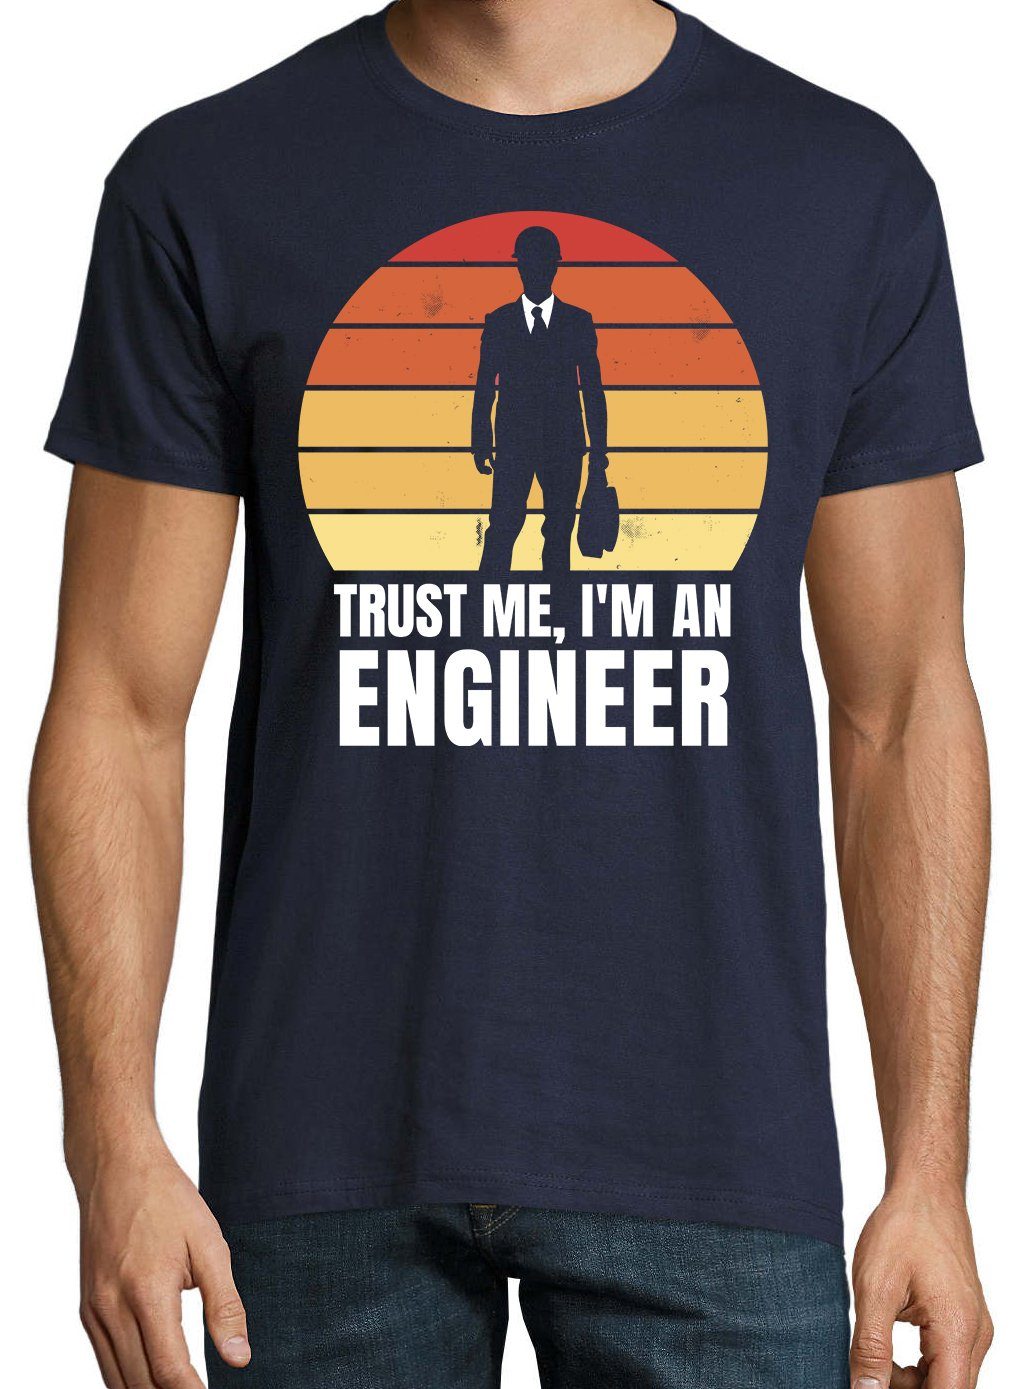 Youth Navyblau Frontdruck mit Engineer Shirt Herren trendigem Ingenieur T-Shirt Designz